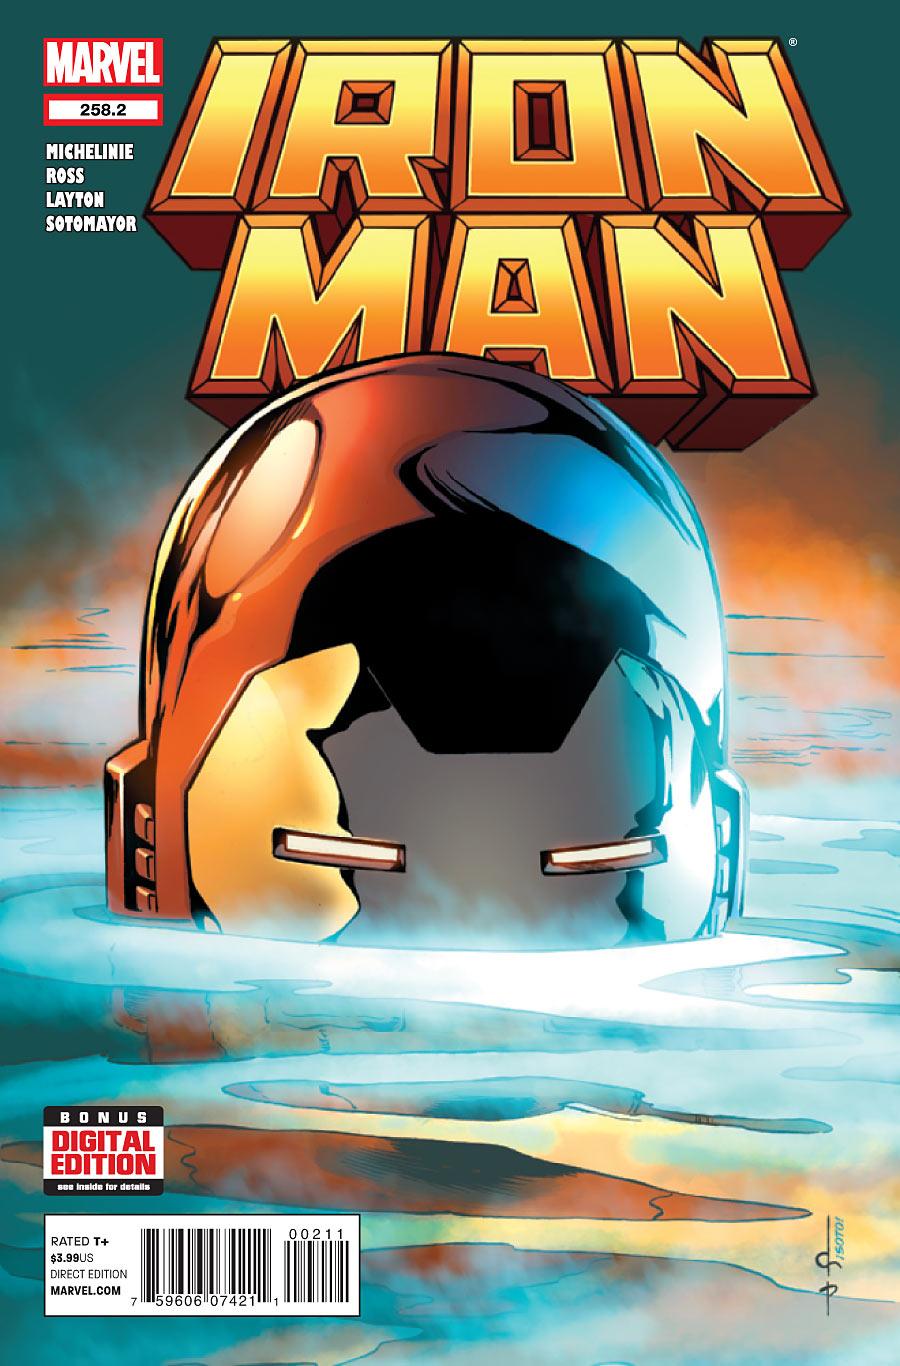 Iron Man Vol. 1 #258.2